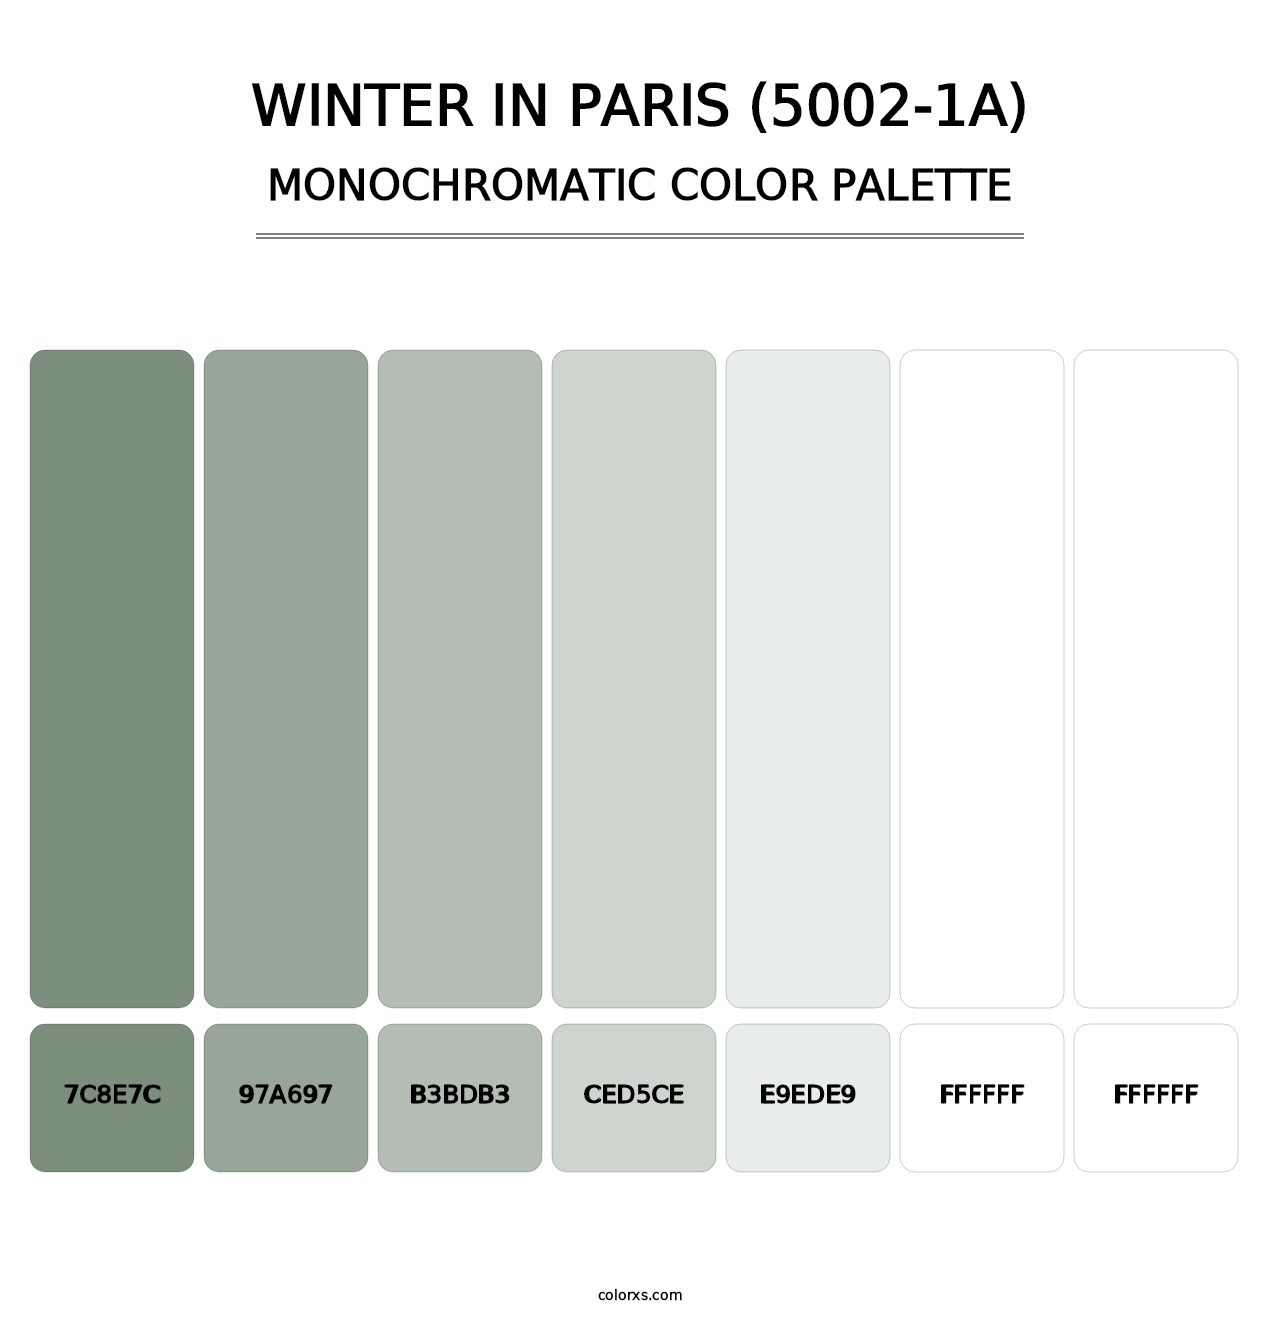 Winter in Paris (5002-1A) - Monochromatic Color Palette